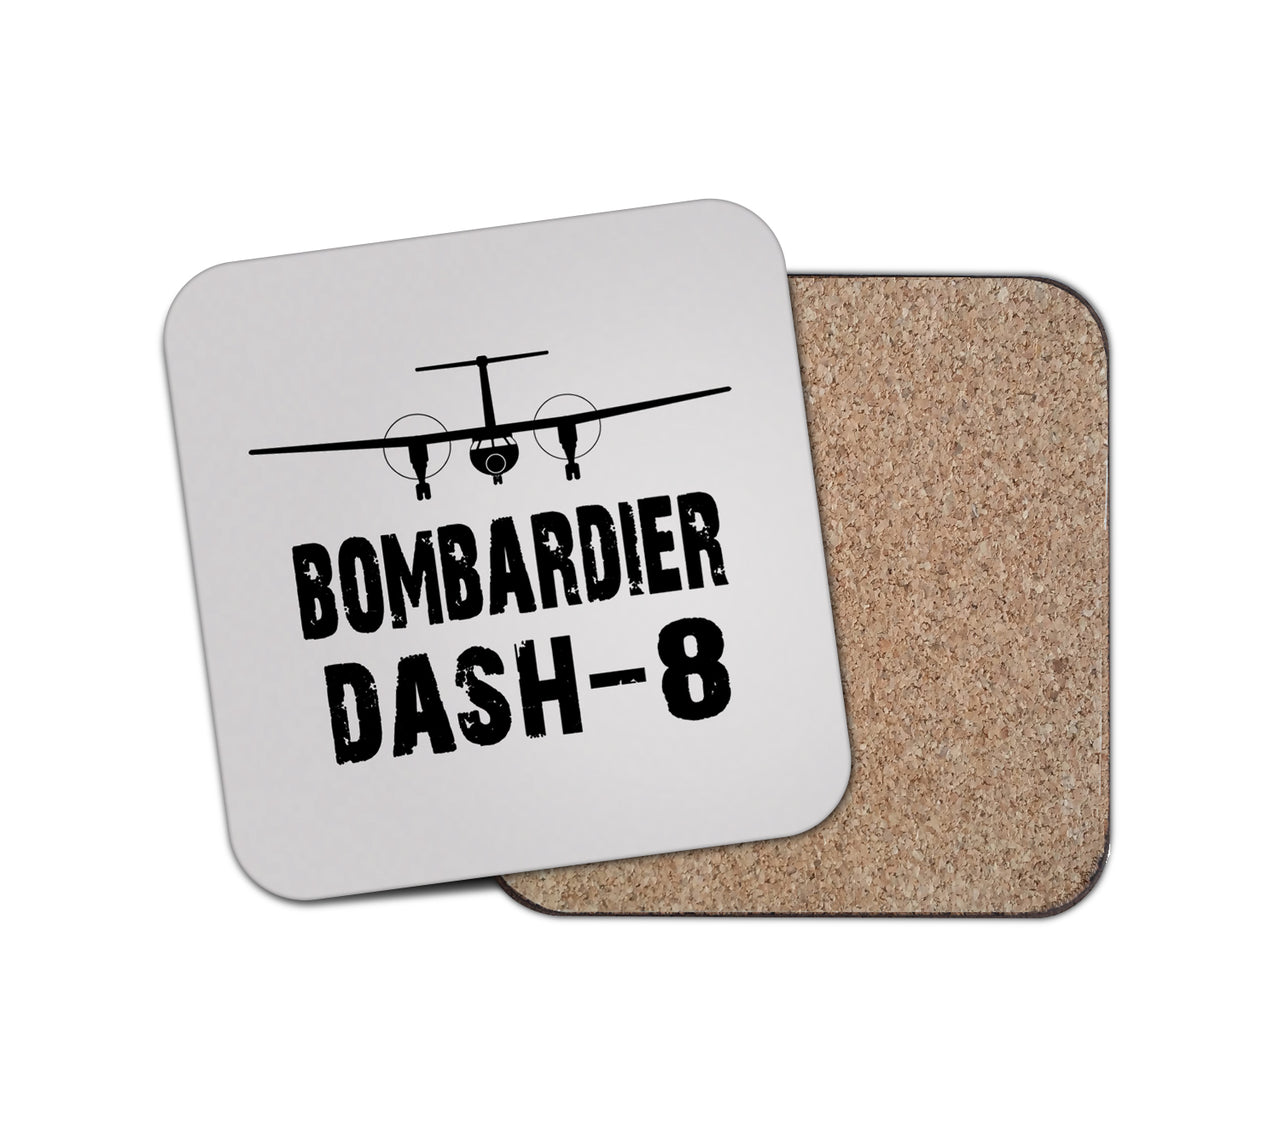 Bombardier Dash-8 & Plane Designed Coasters